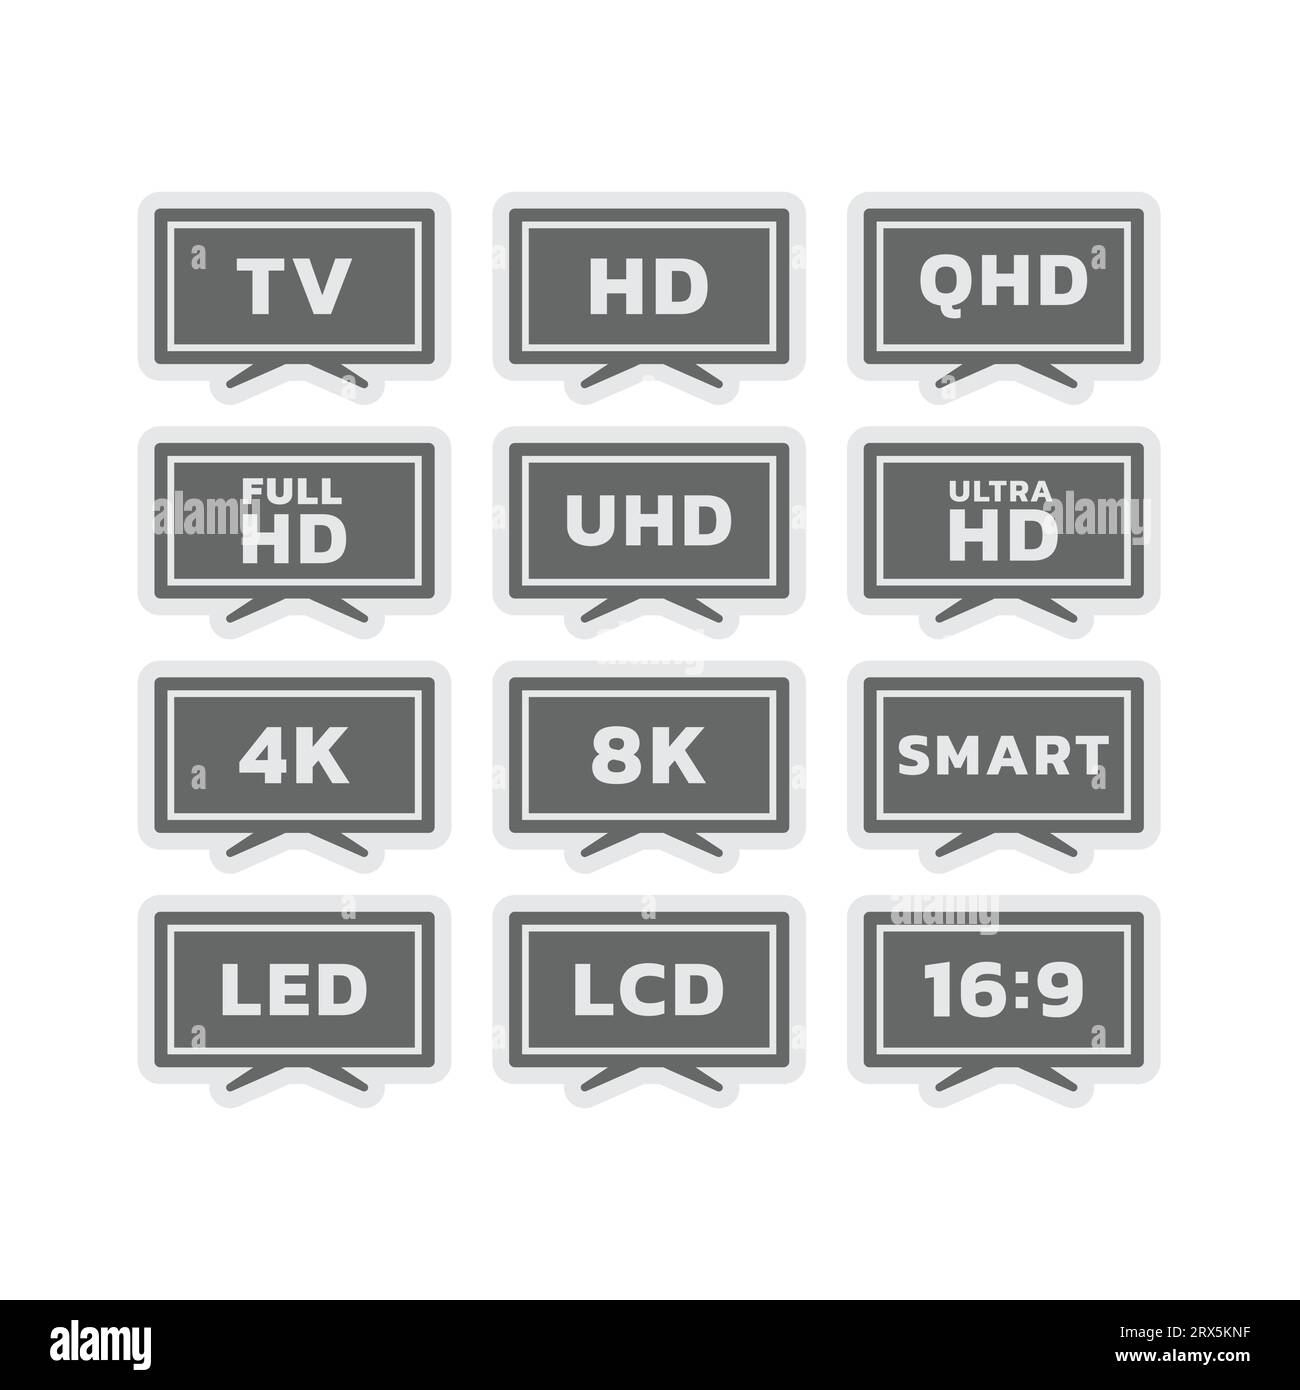 Smart tv e etichette vettoriali 8K. Set di icone TV con display LED e risoluzione 4K Ultra HD. Illustrazione Vettoriale